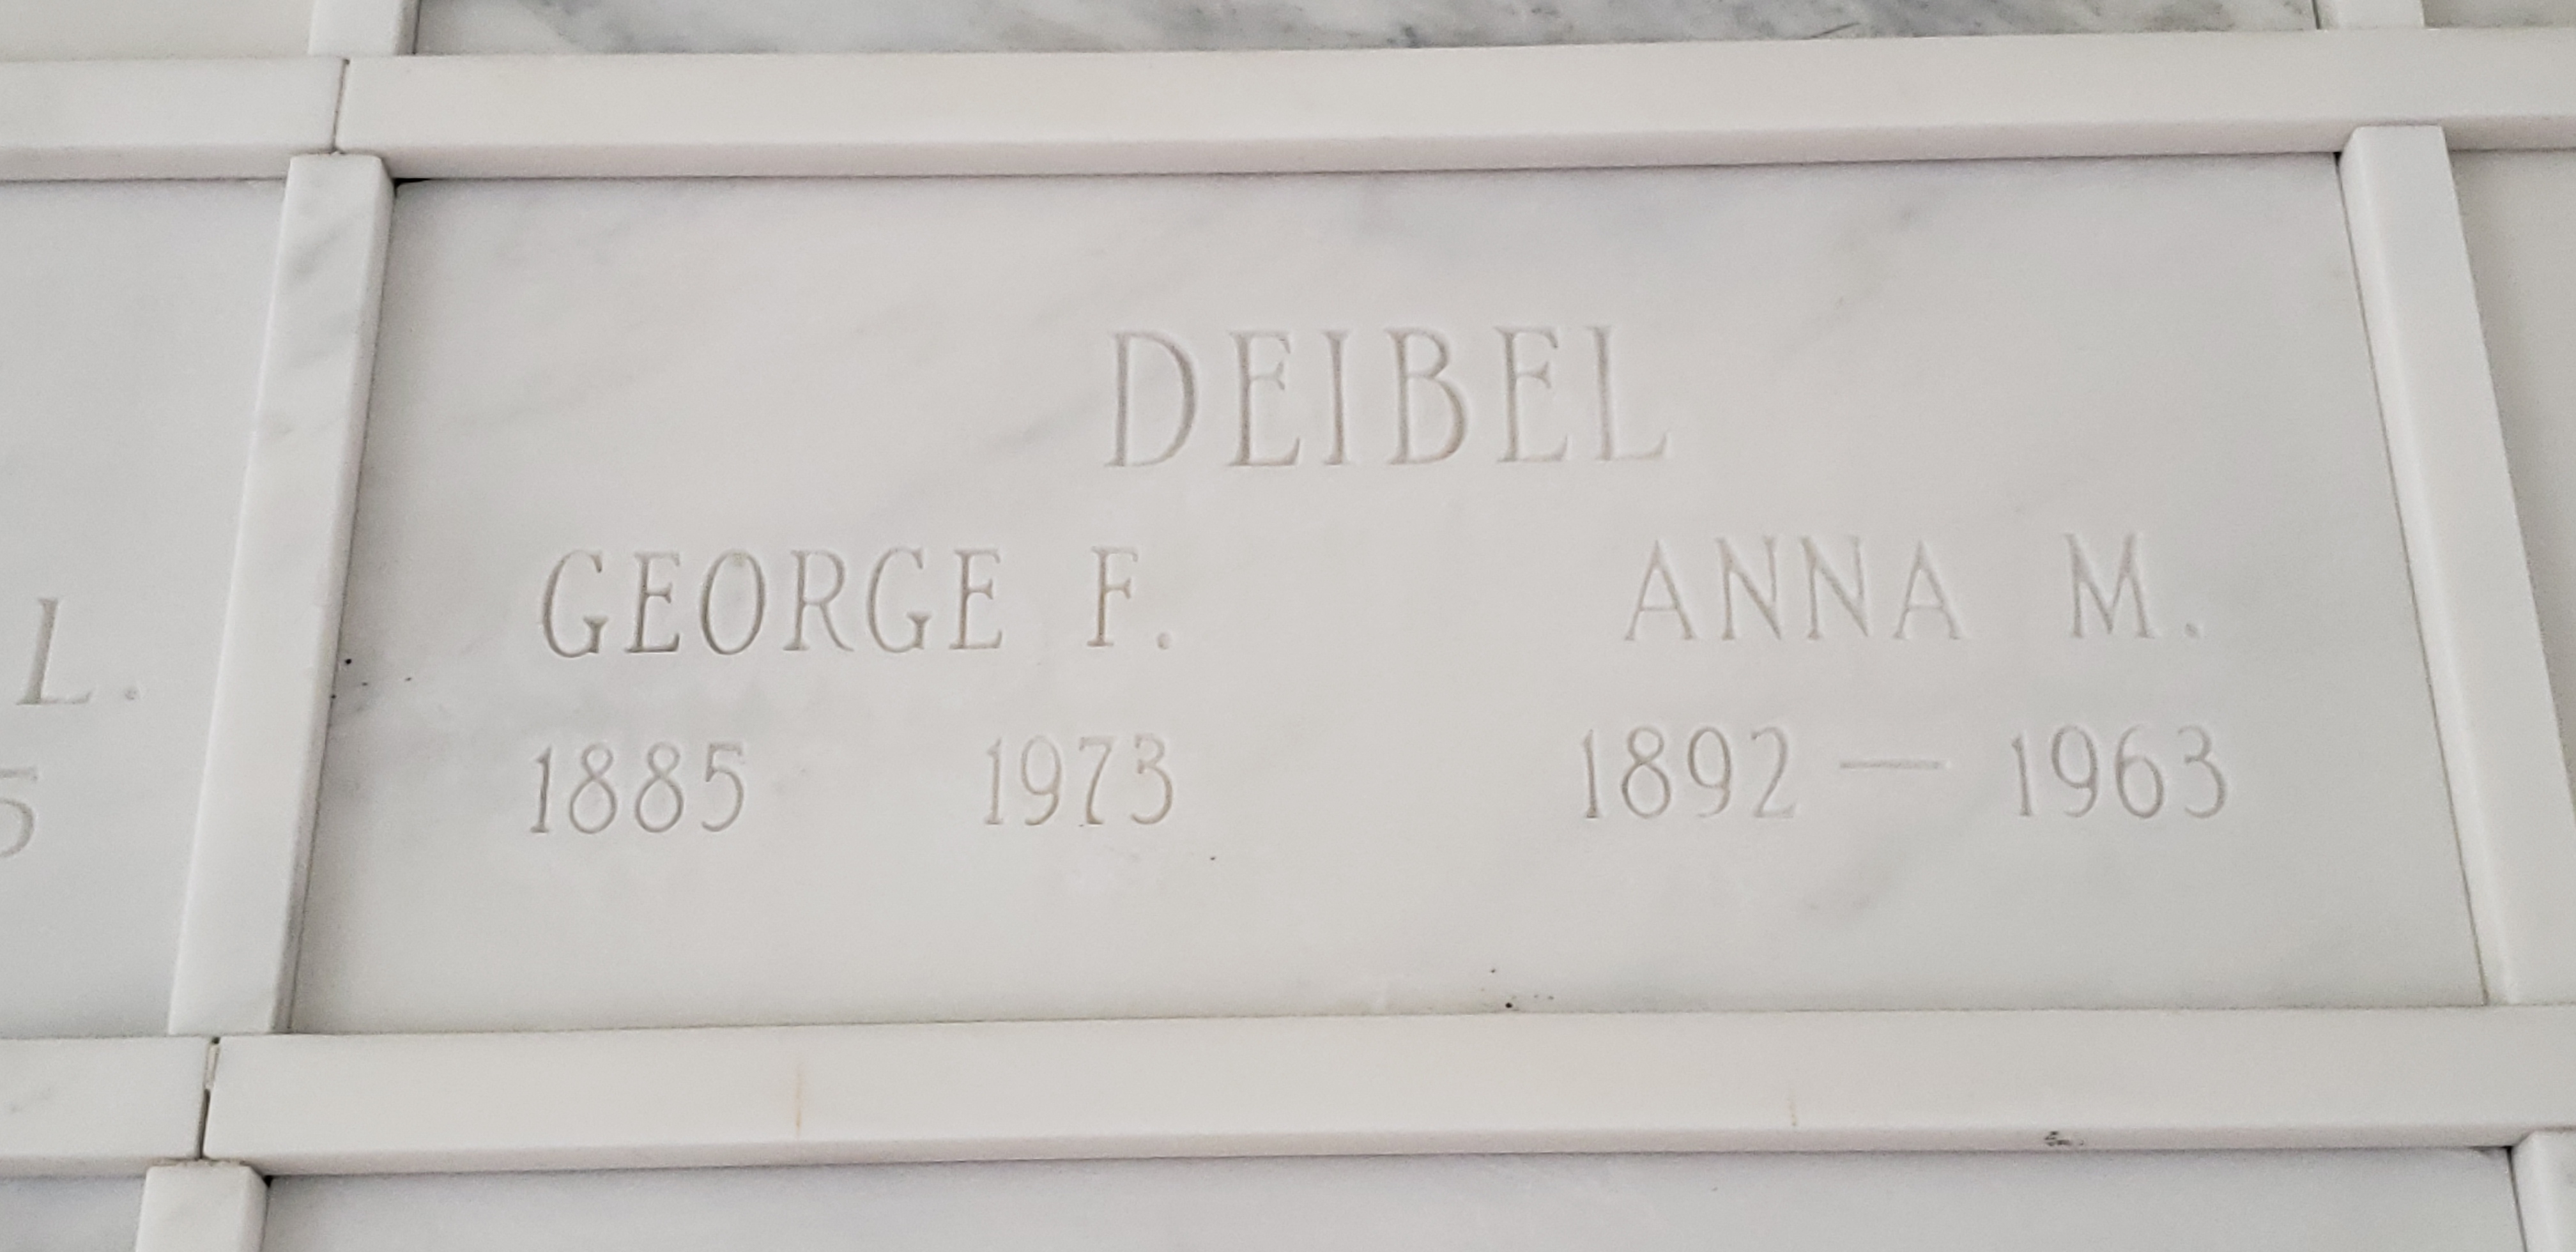 George F Deibel